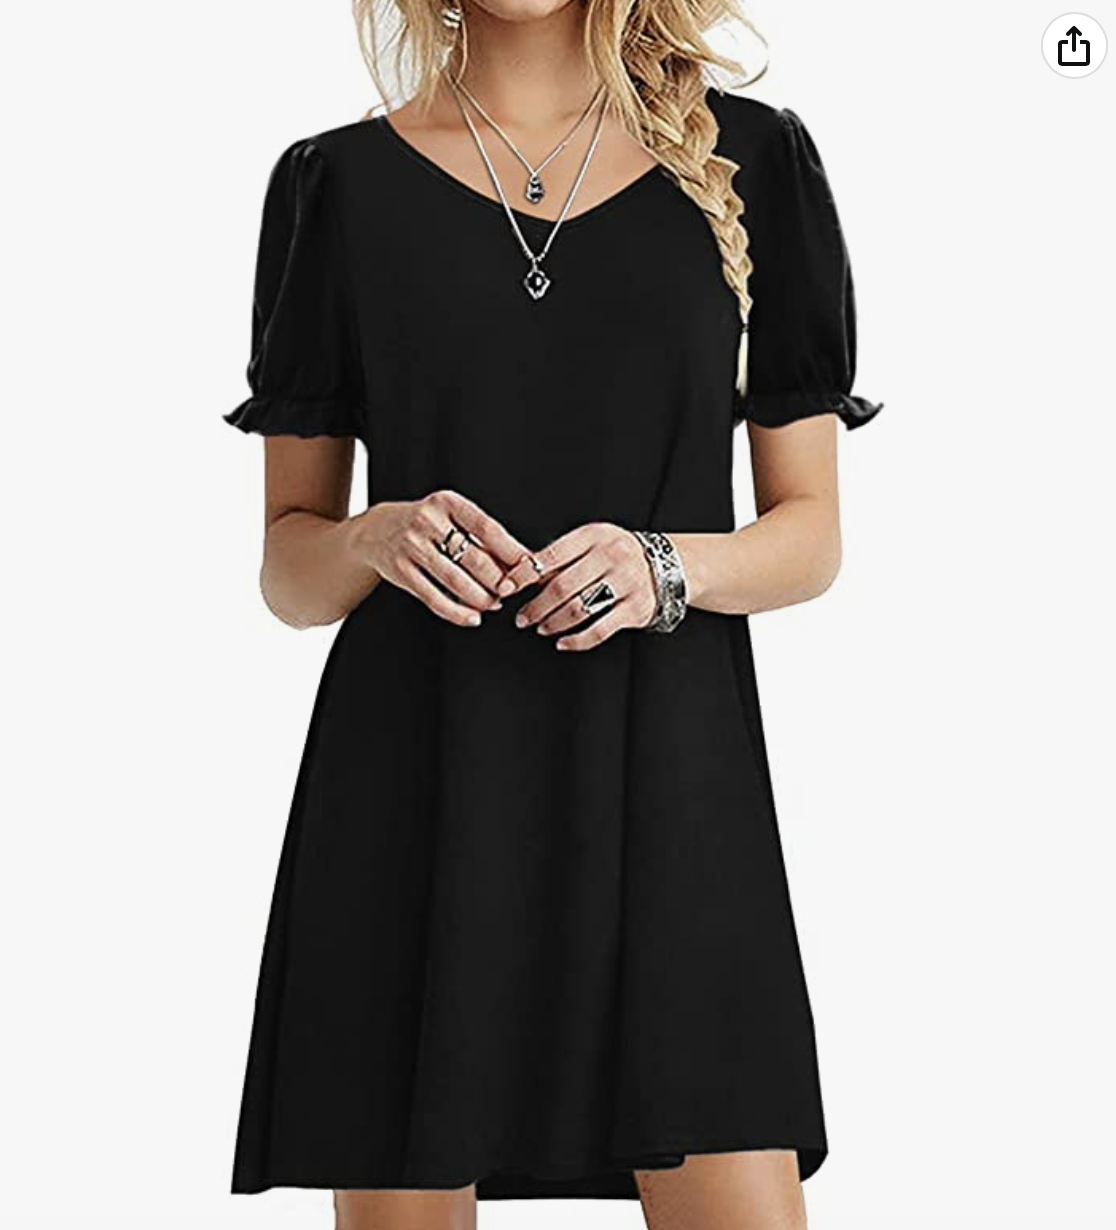 2023 amazon black dress - AllEars.Net